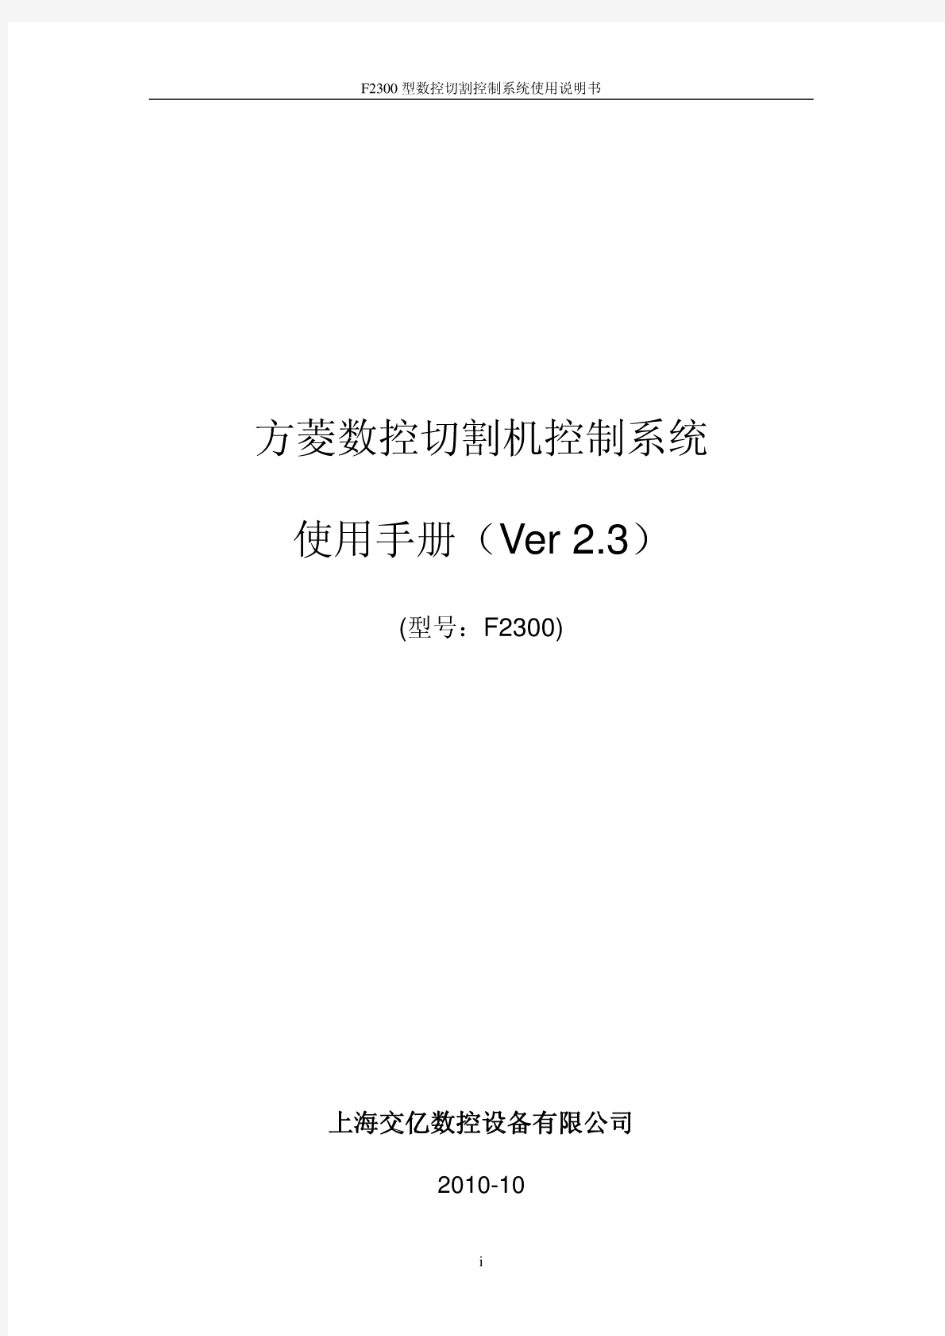 上海交大方菱数控切割机--数控平面切割控制系统(ver2.3)操作手册